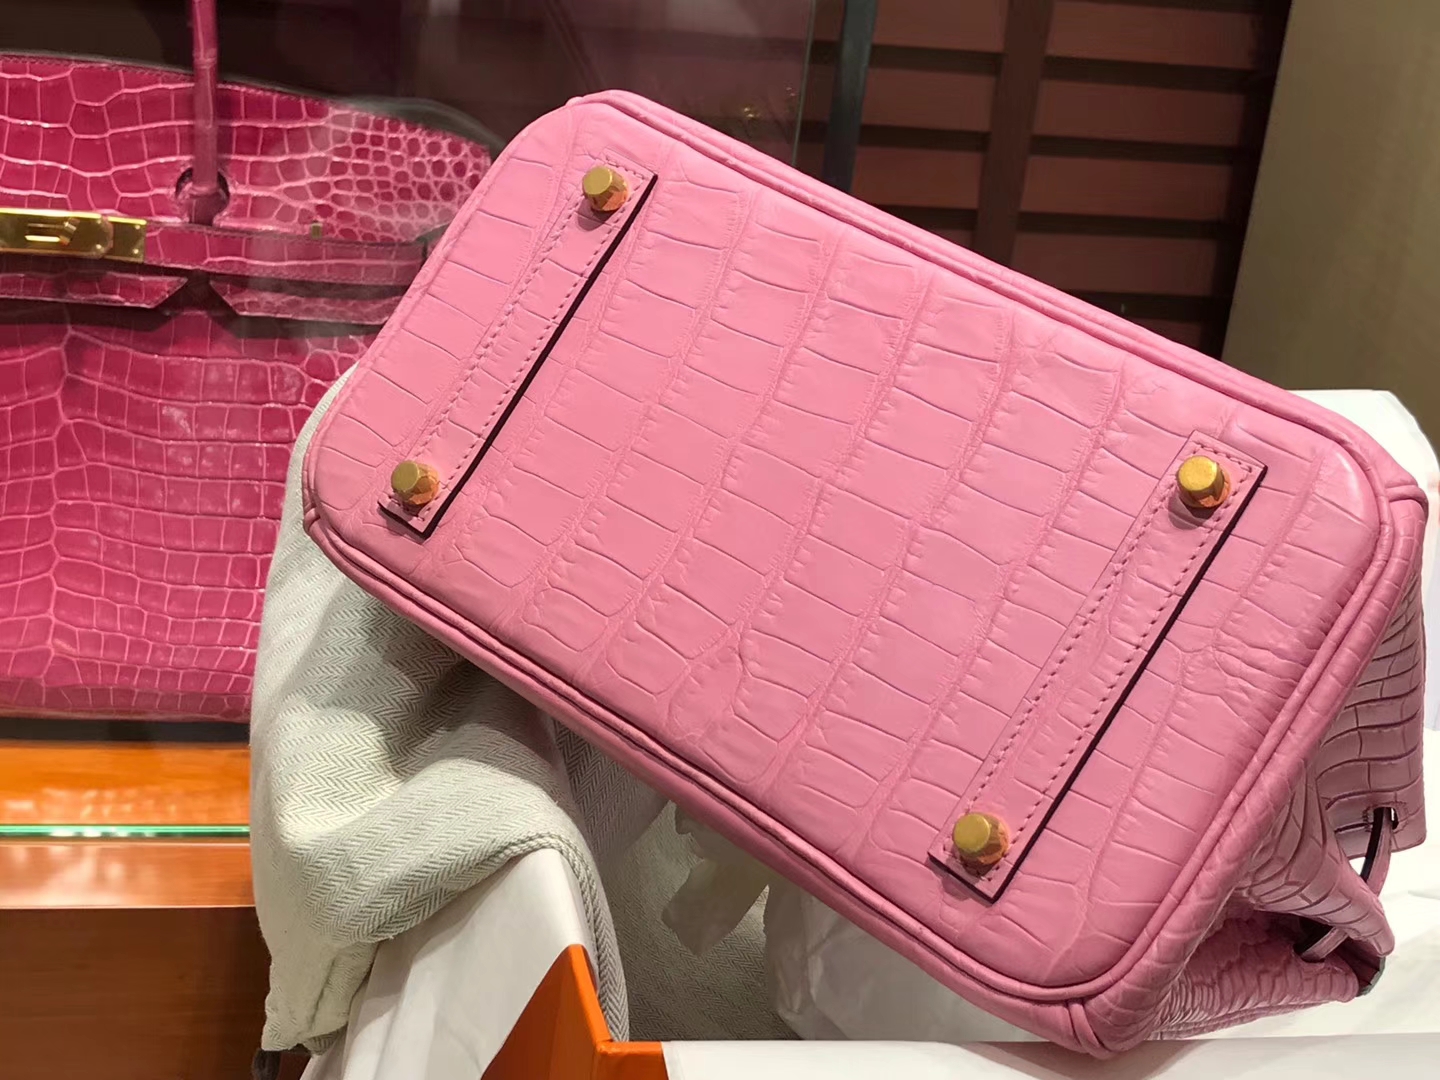 爱马仕 HERMES 铂金包 Birkin 配全套专柜原版包装 全球发售 rose sakura 水粉色 3q